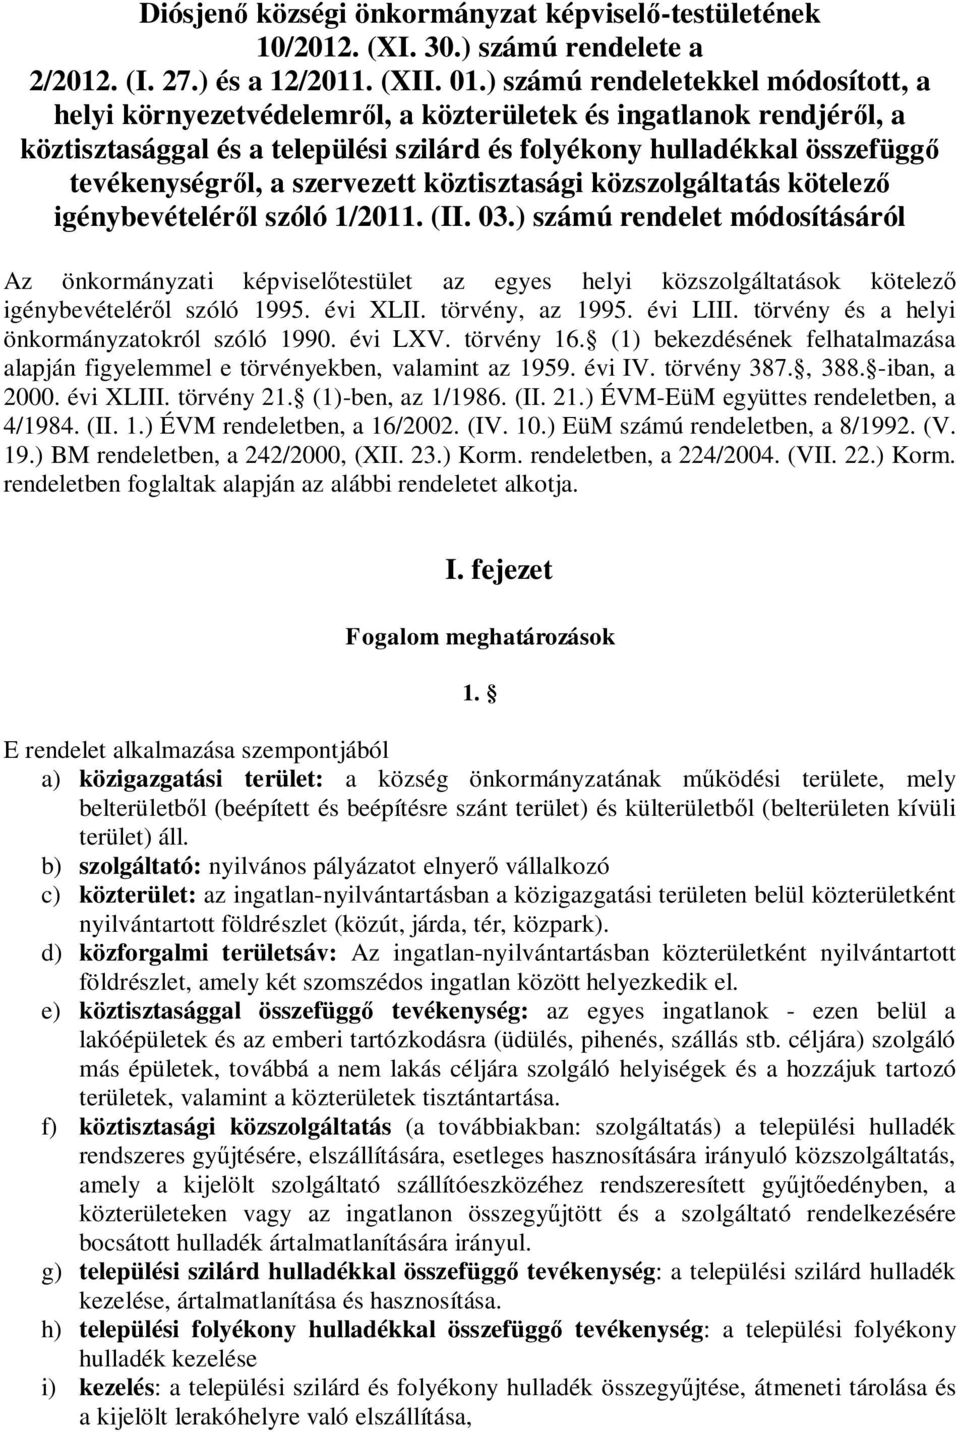 szervezett köztisztasági közszolgáltatás kötelez igénybevételér l szóló 1/2011. (II. 03.